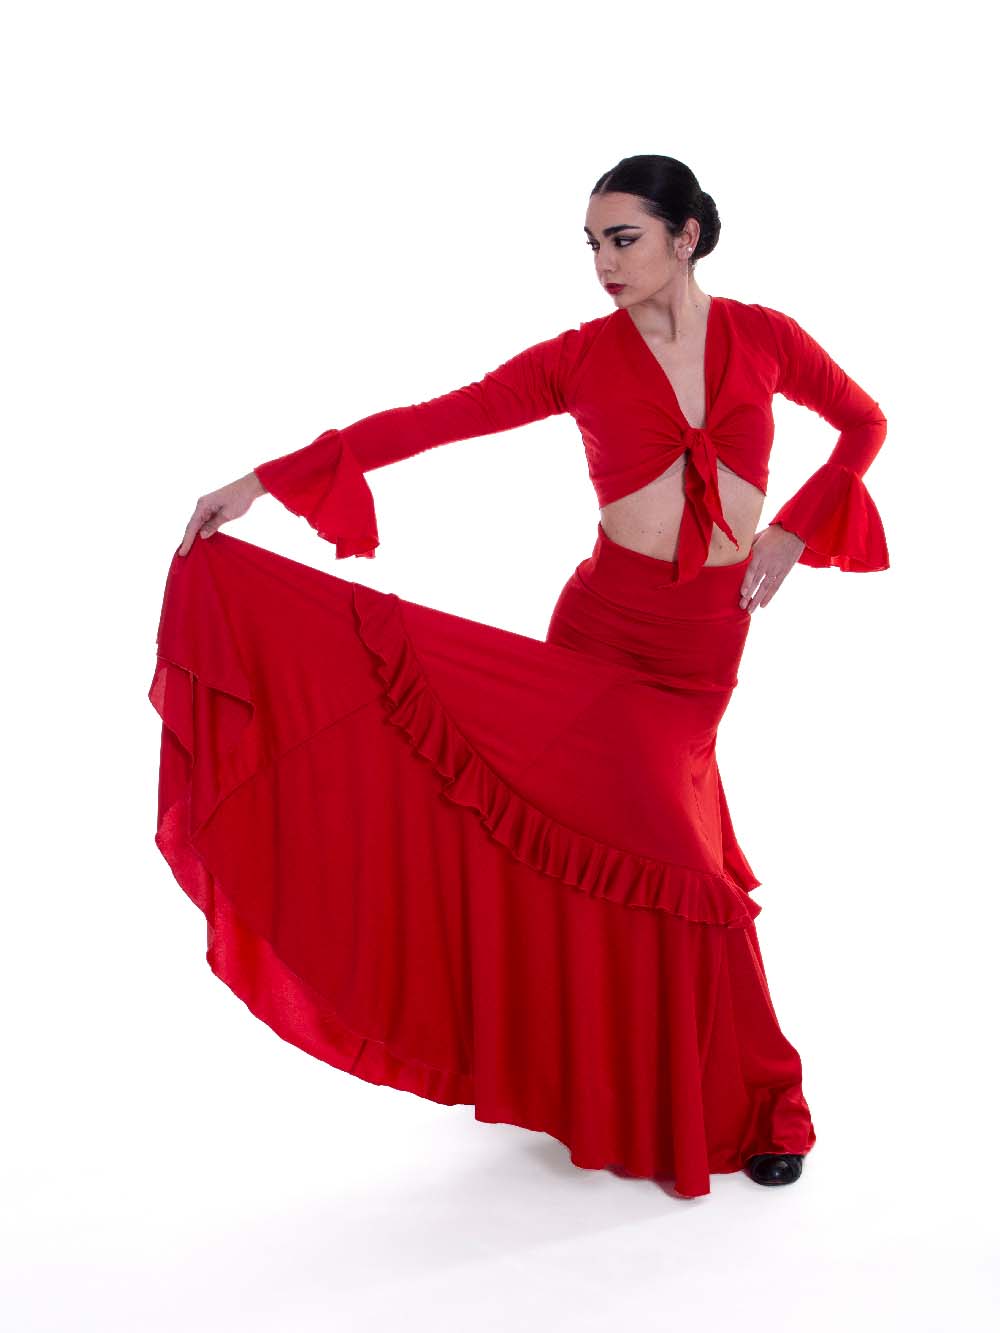 de ensayo para baile flamenco -